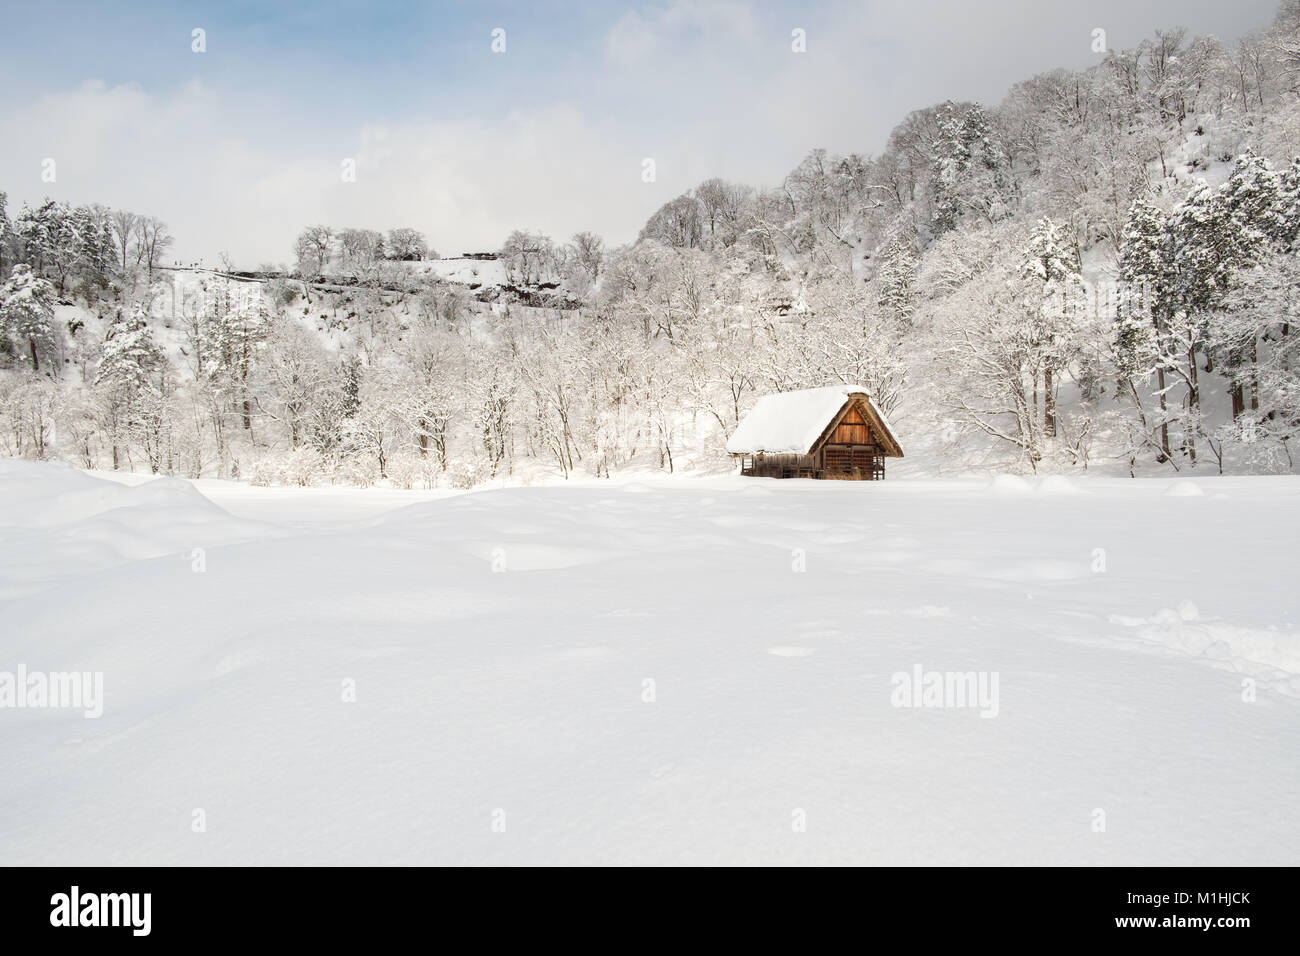 Villages historiques de Shirakawa-go et Gokayama, au Japon. L'hiver à Shirakawa-go, le Japon. Style traditionnel dans des huttes Gassho-zukuri, Village Shirakawago et Banque D'Images